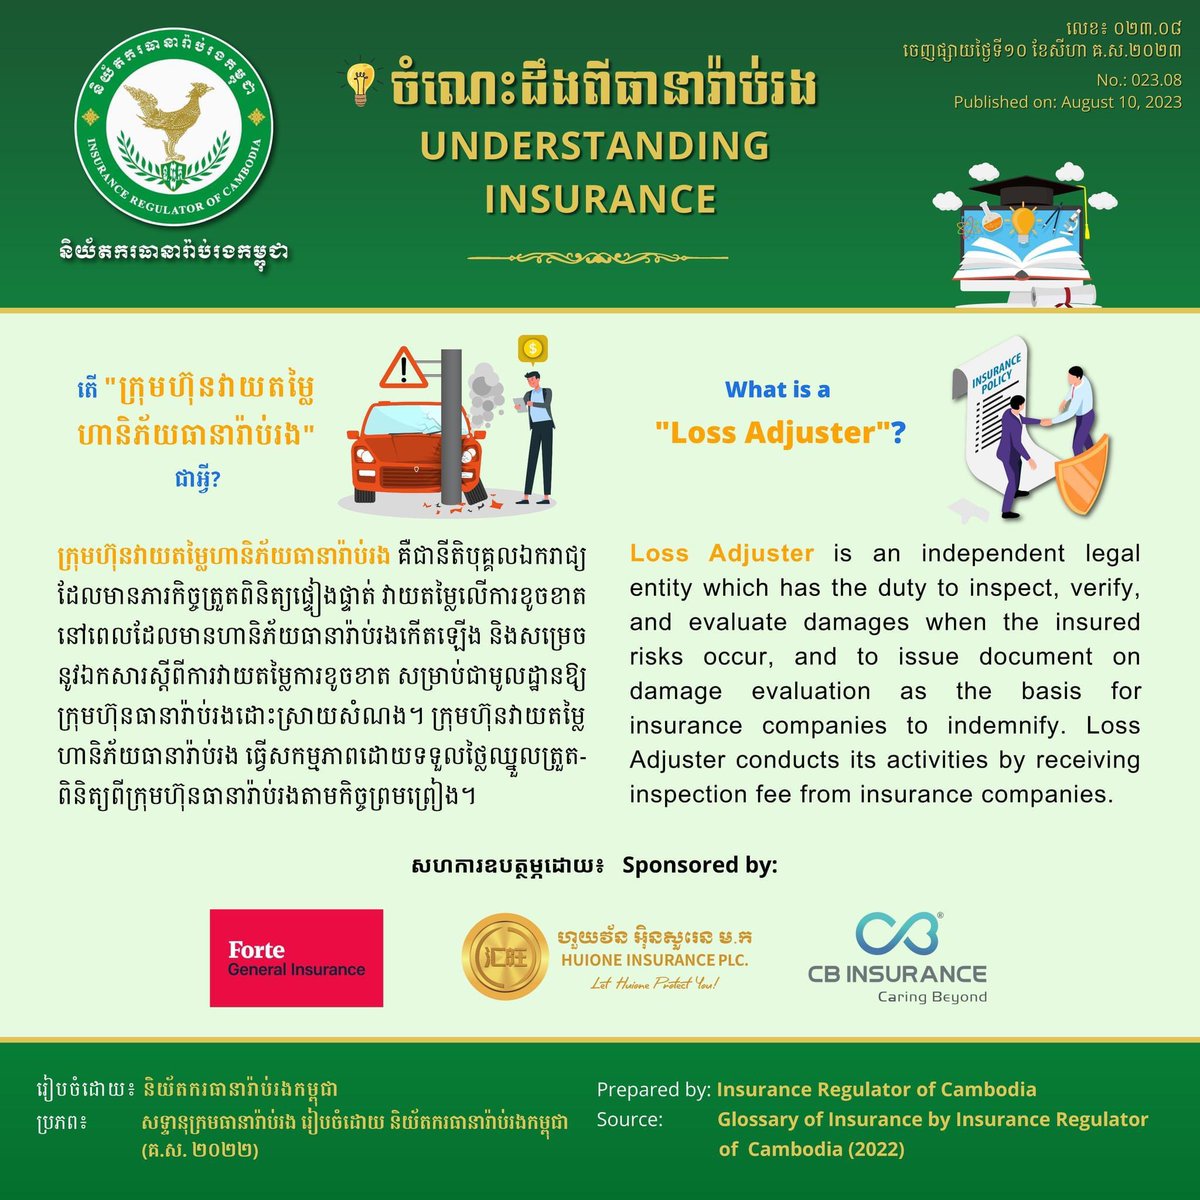 'ក្រុមហ៊ុនវាយតម្លៃហានិភ័យធានារ៉ាប់រង' / 'Loss Adjuster'
#IRC #Insurance #Intermediary #LossAdjuster #Cambodia